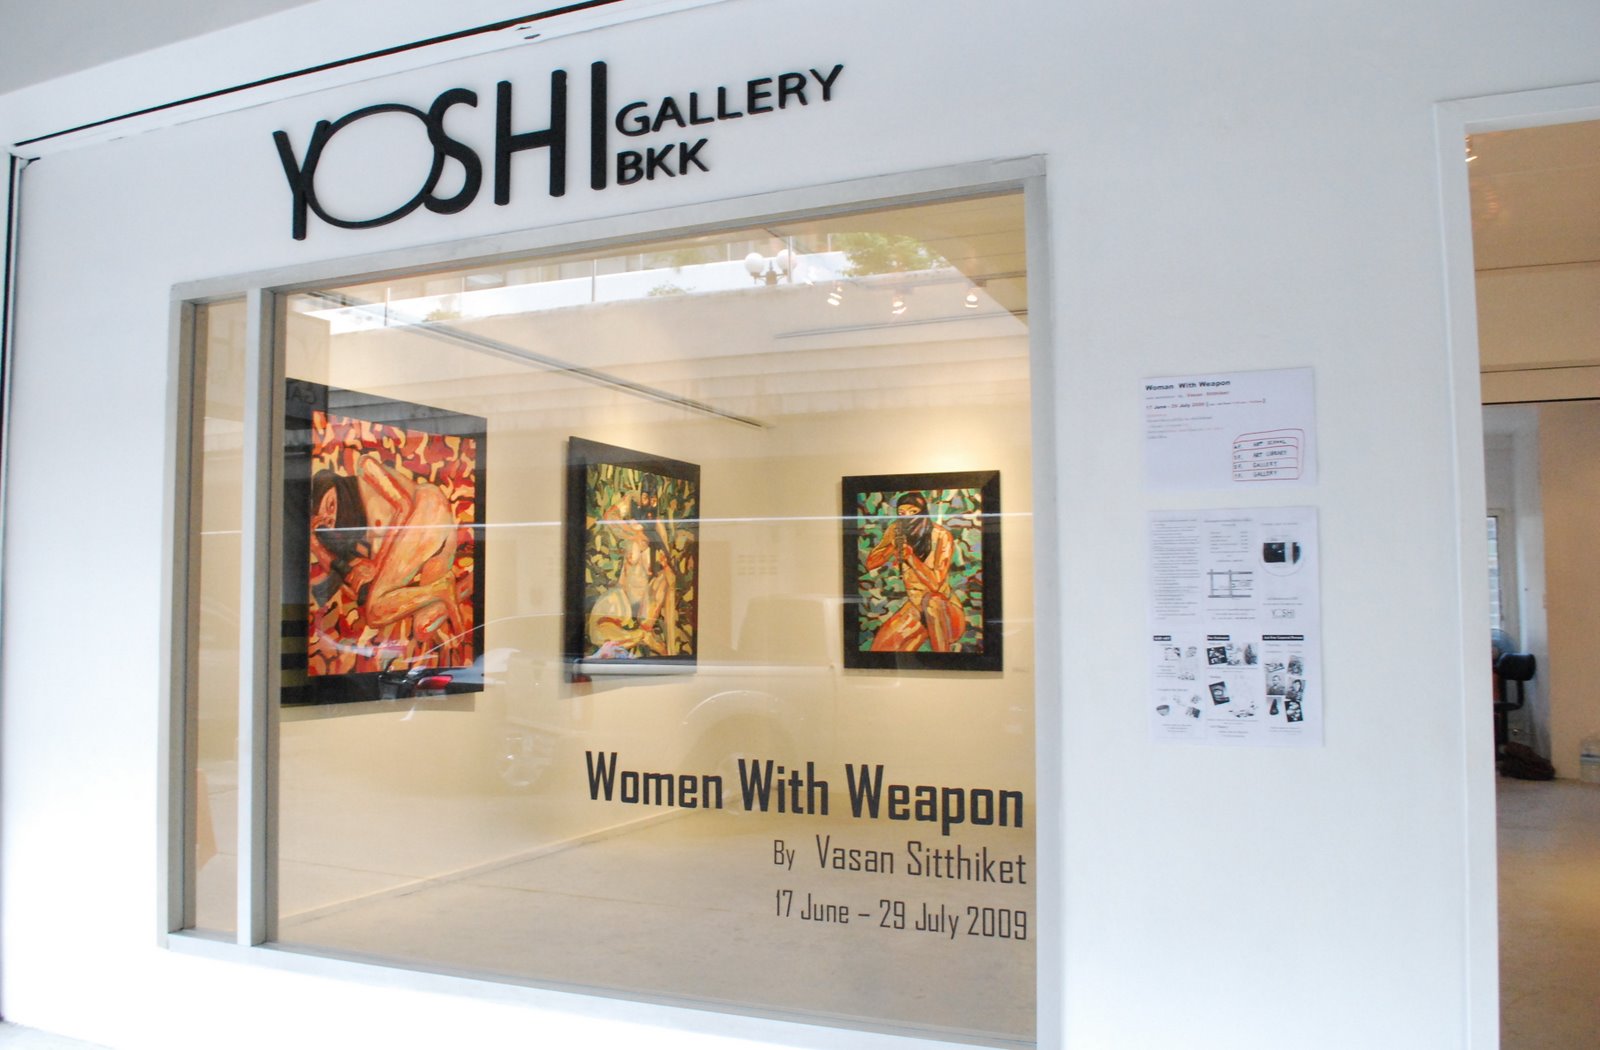 Yoshi gallery bkk